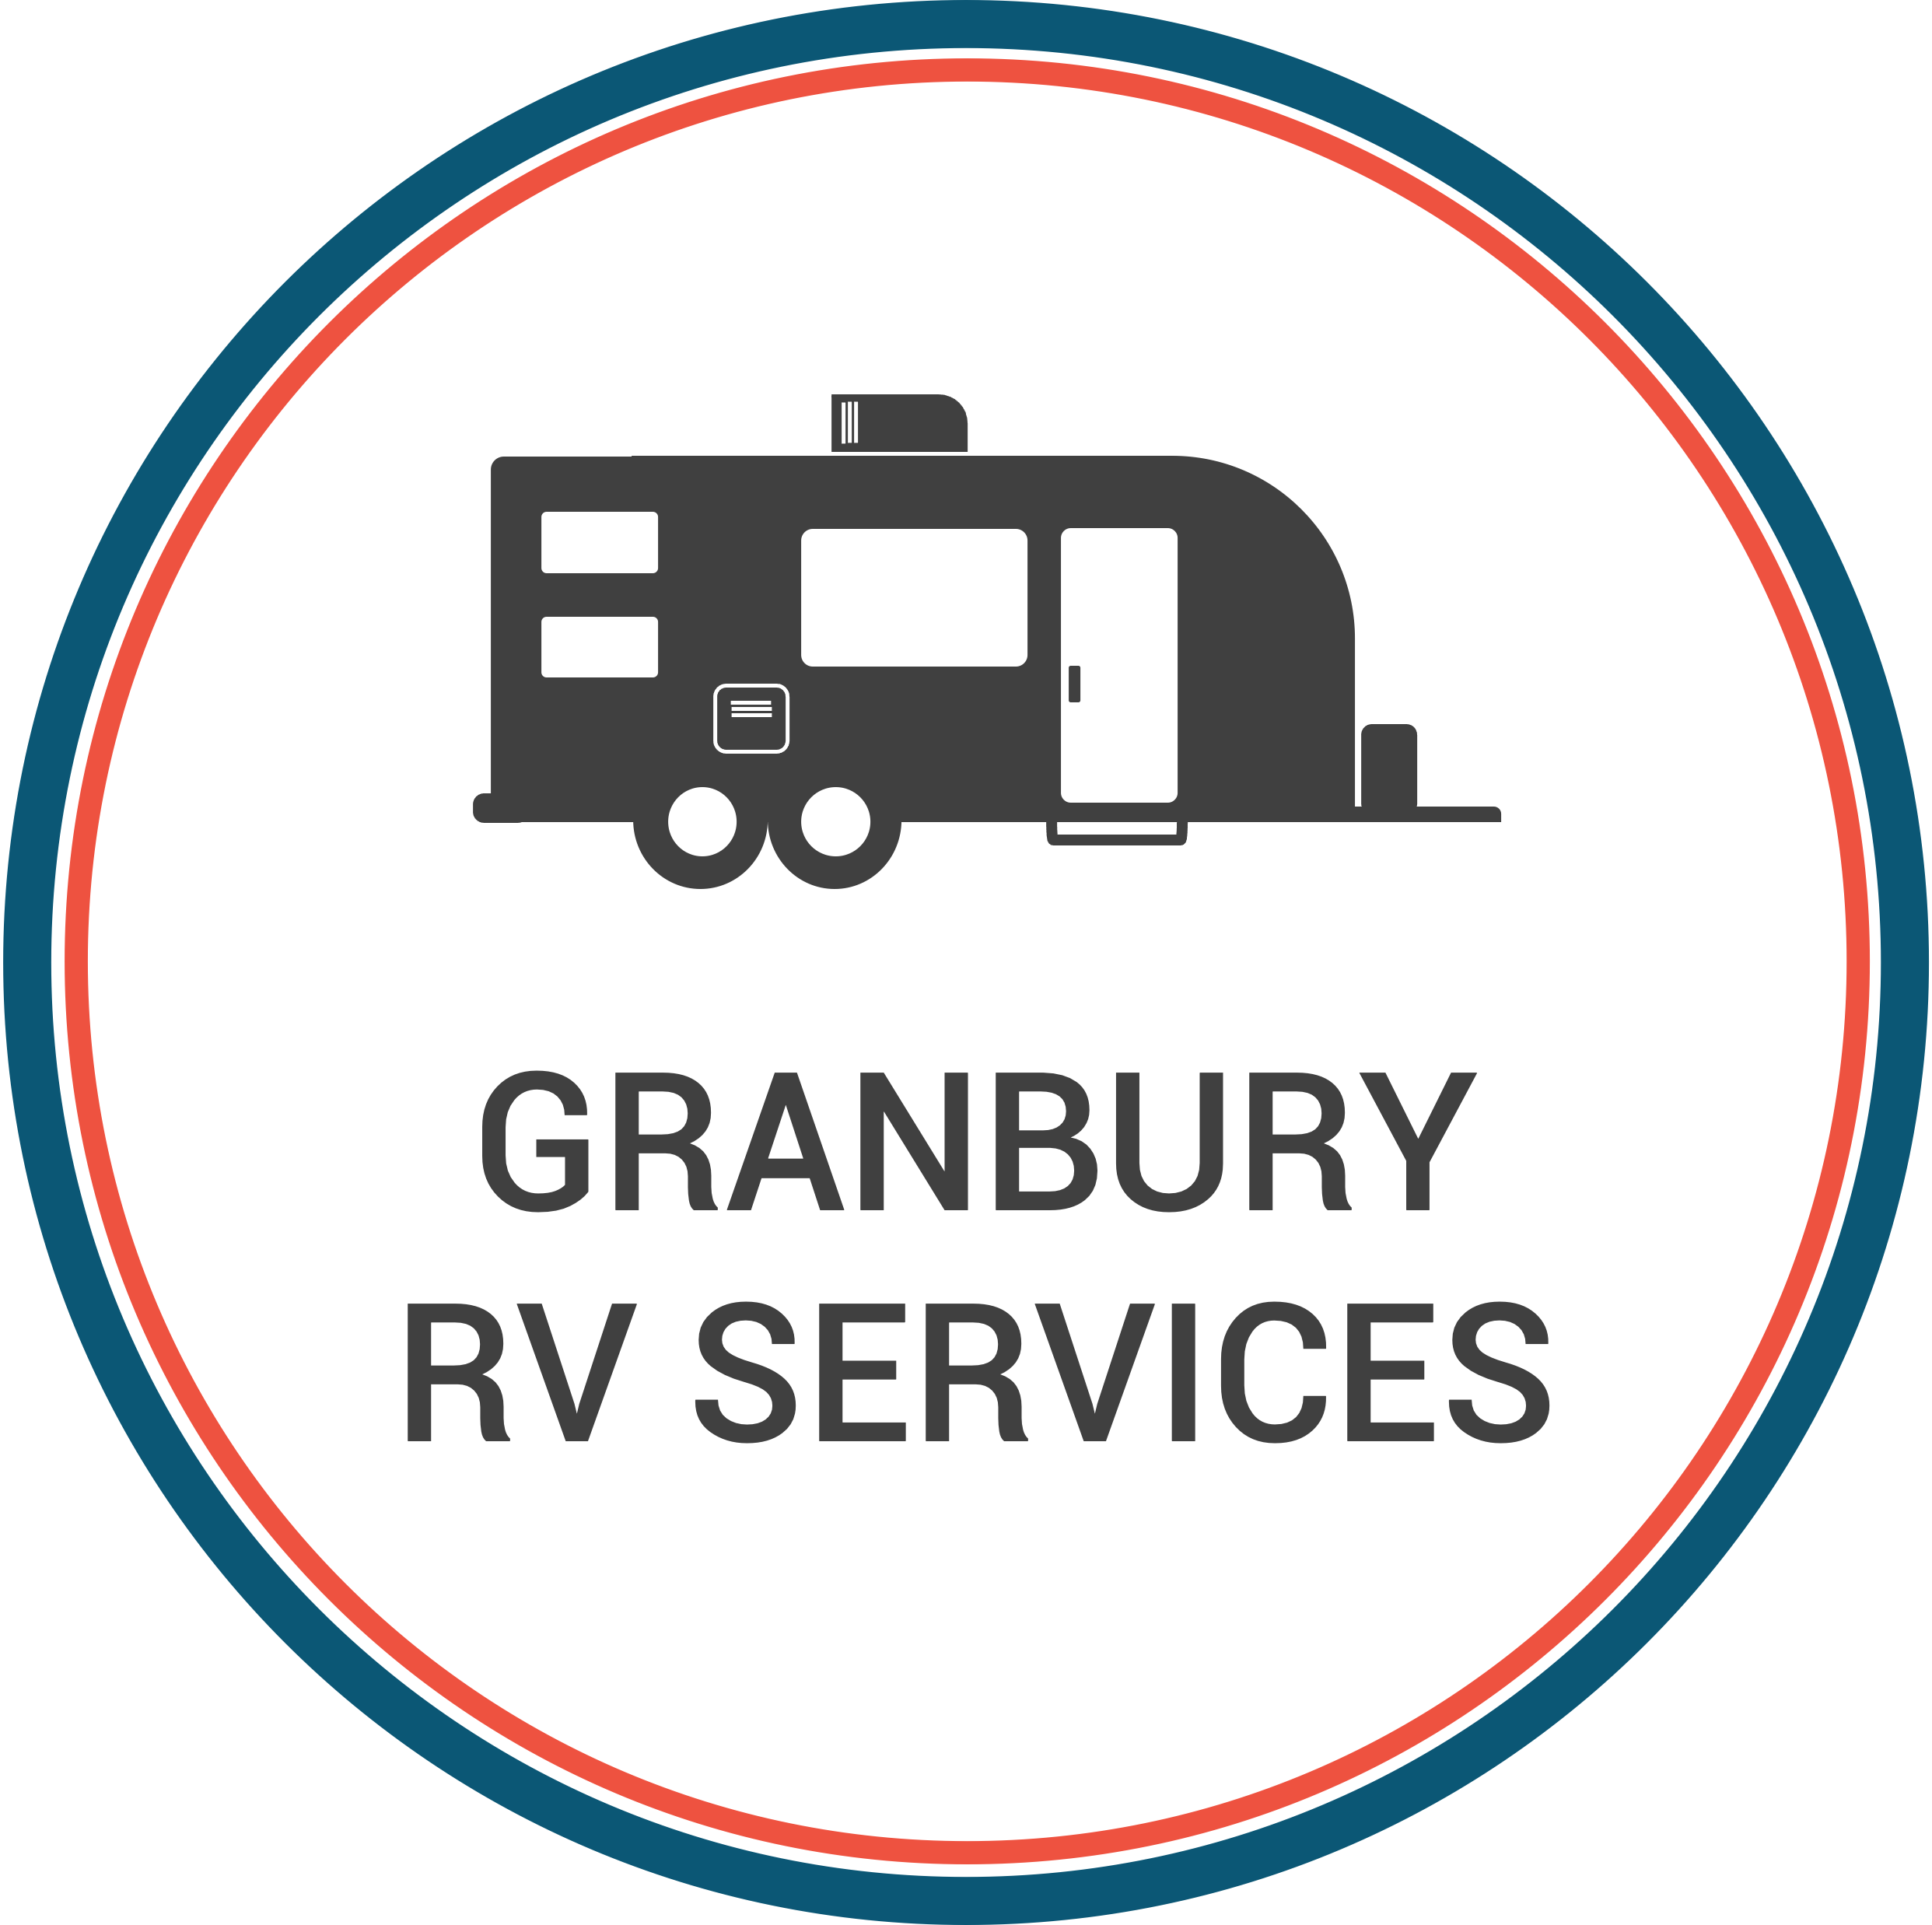 Granbury RV Services